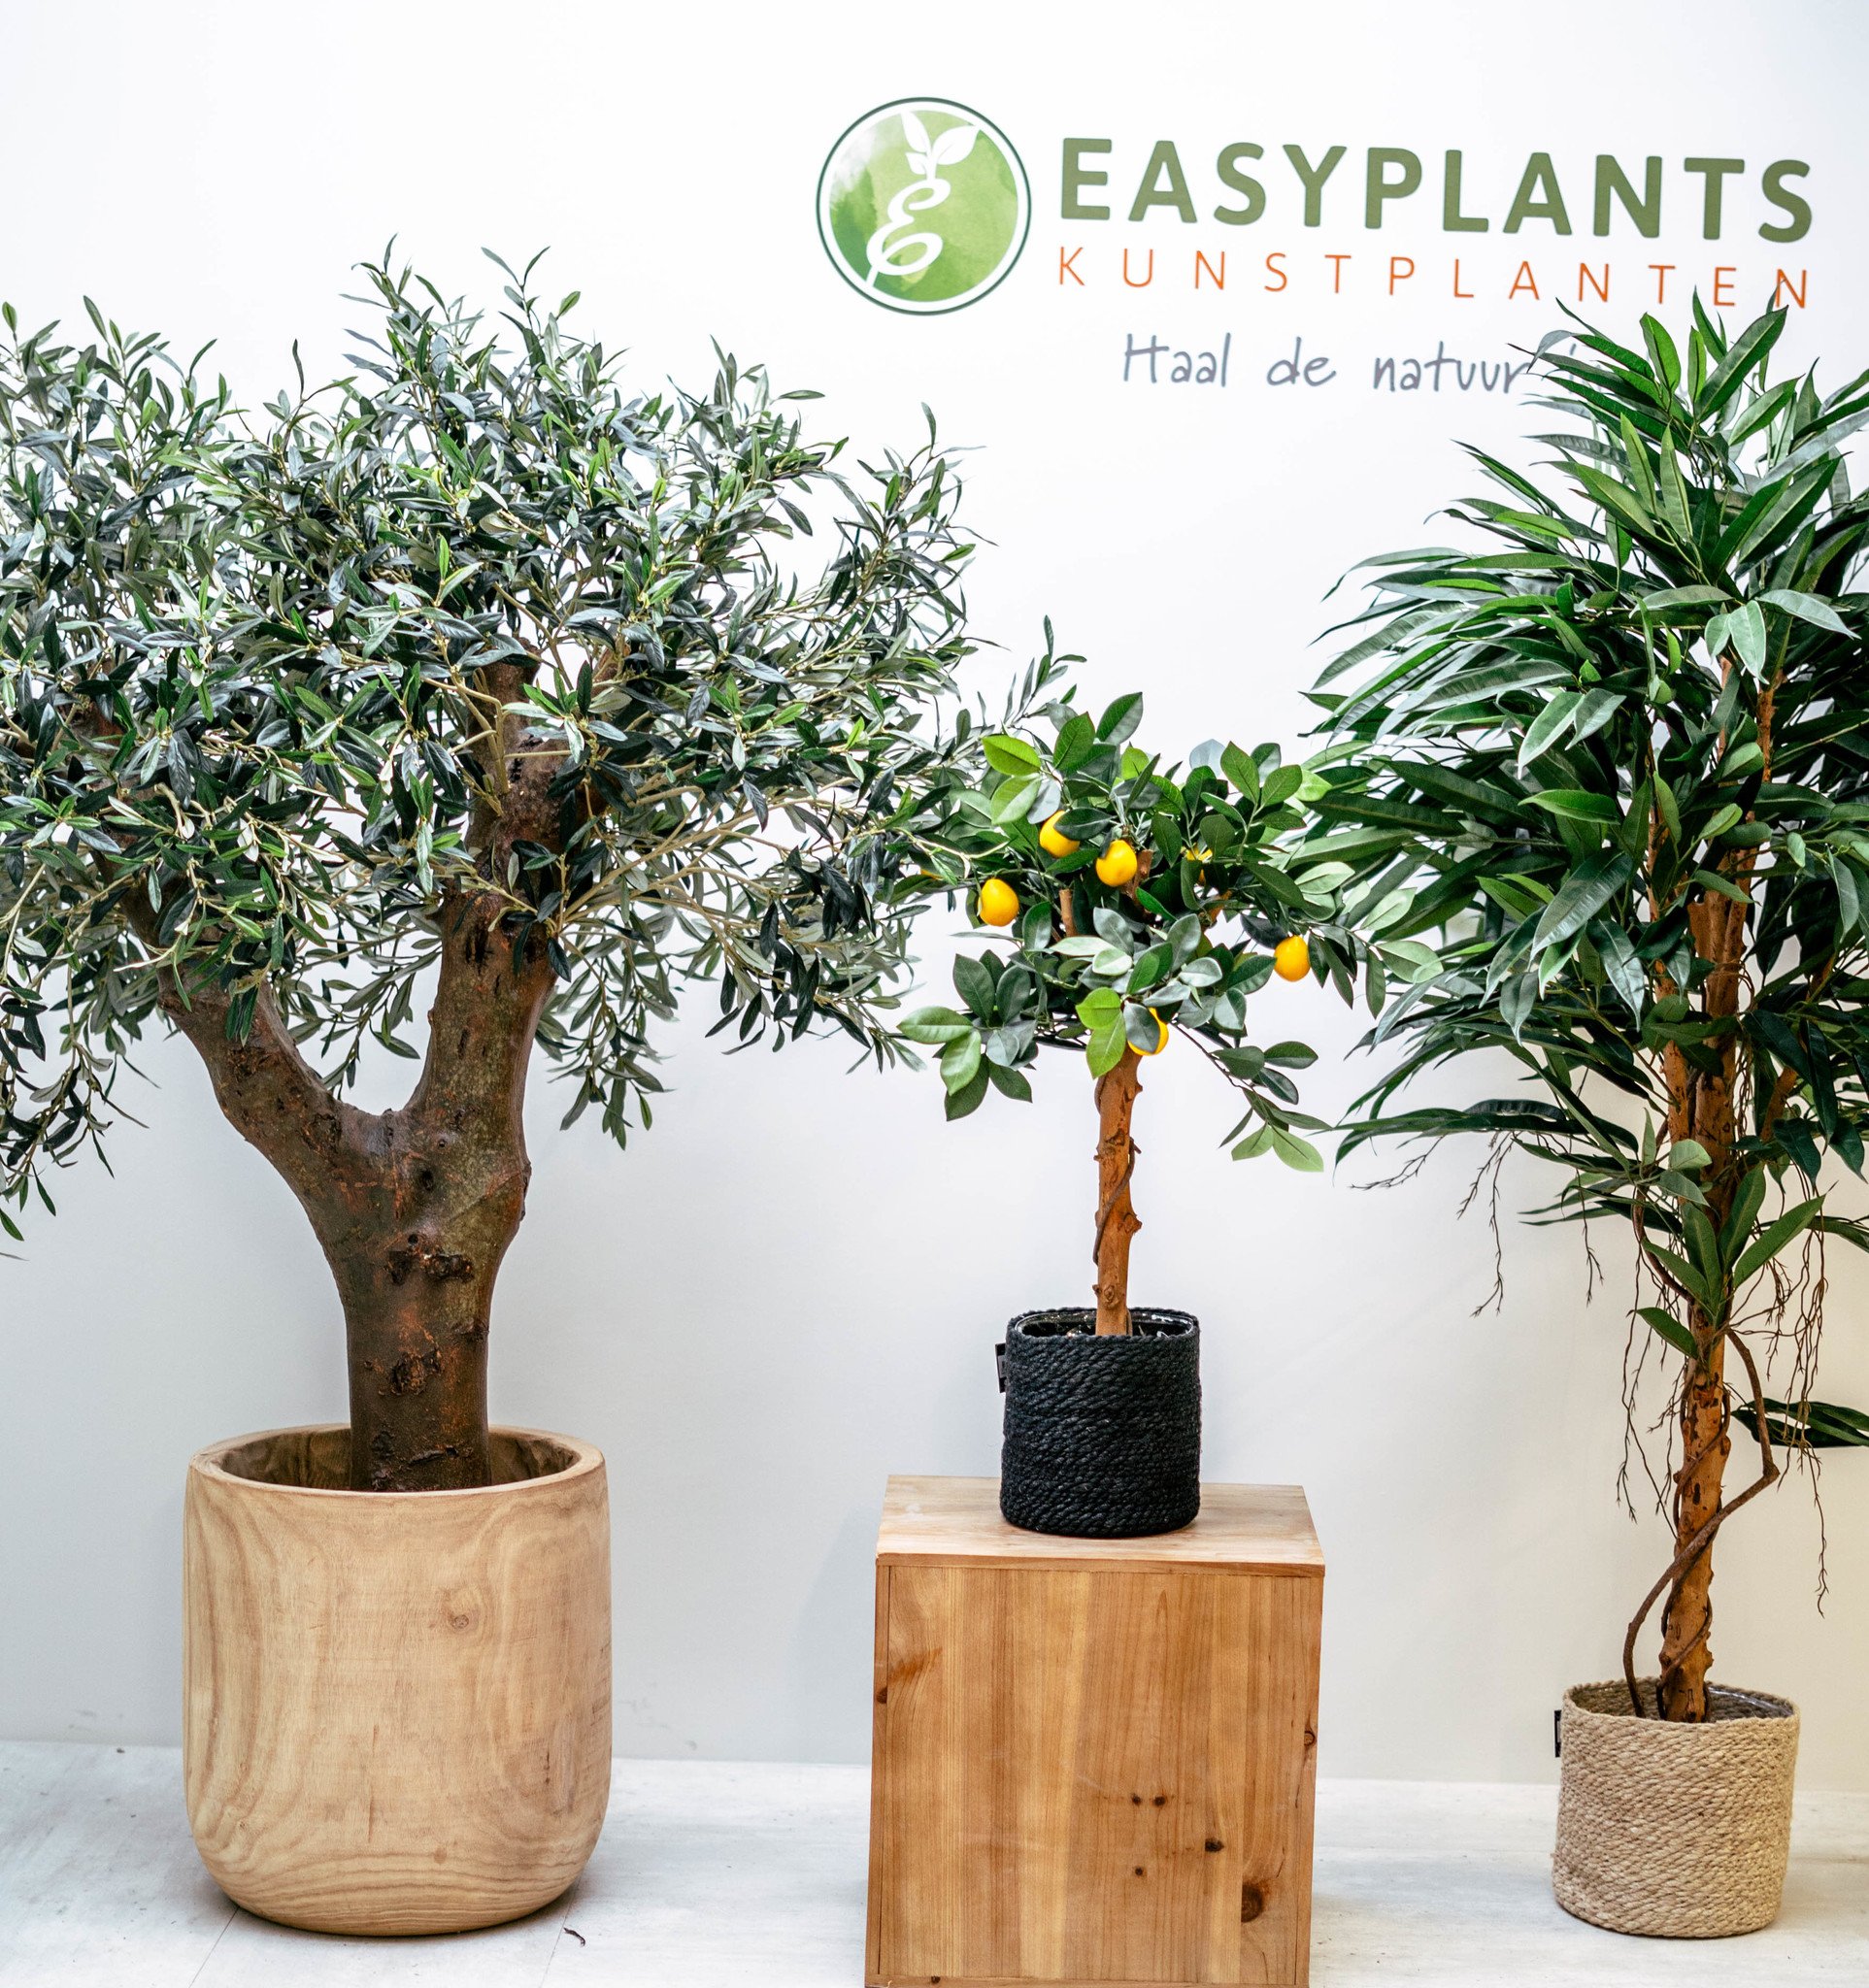 Kunstplanten - De voordelen van kunstplanten voor jou op een rij - Easyplants